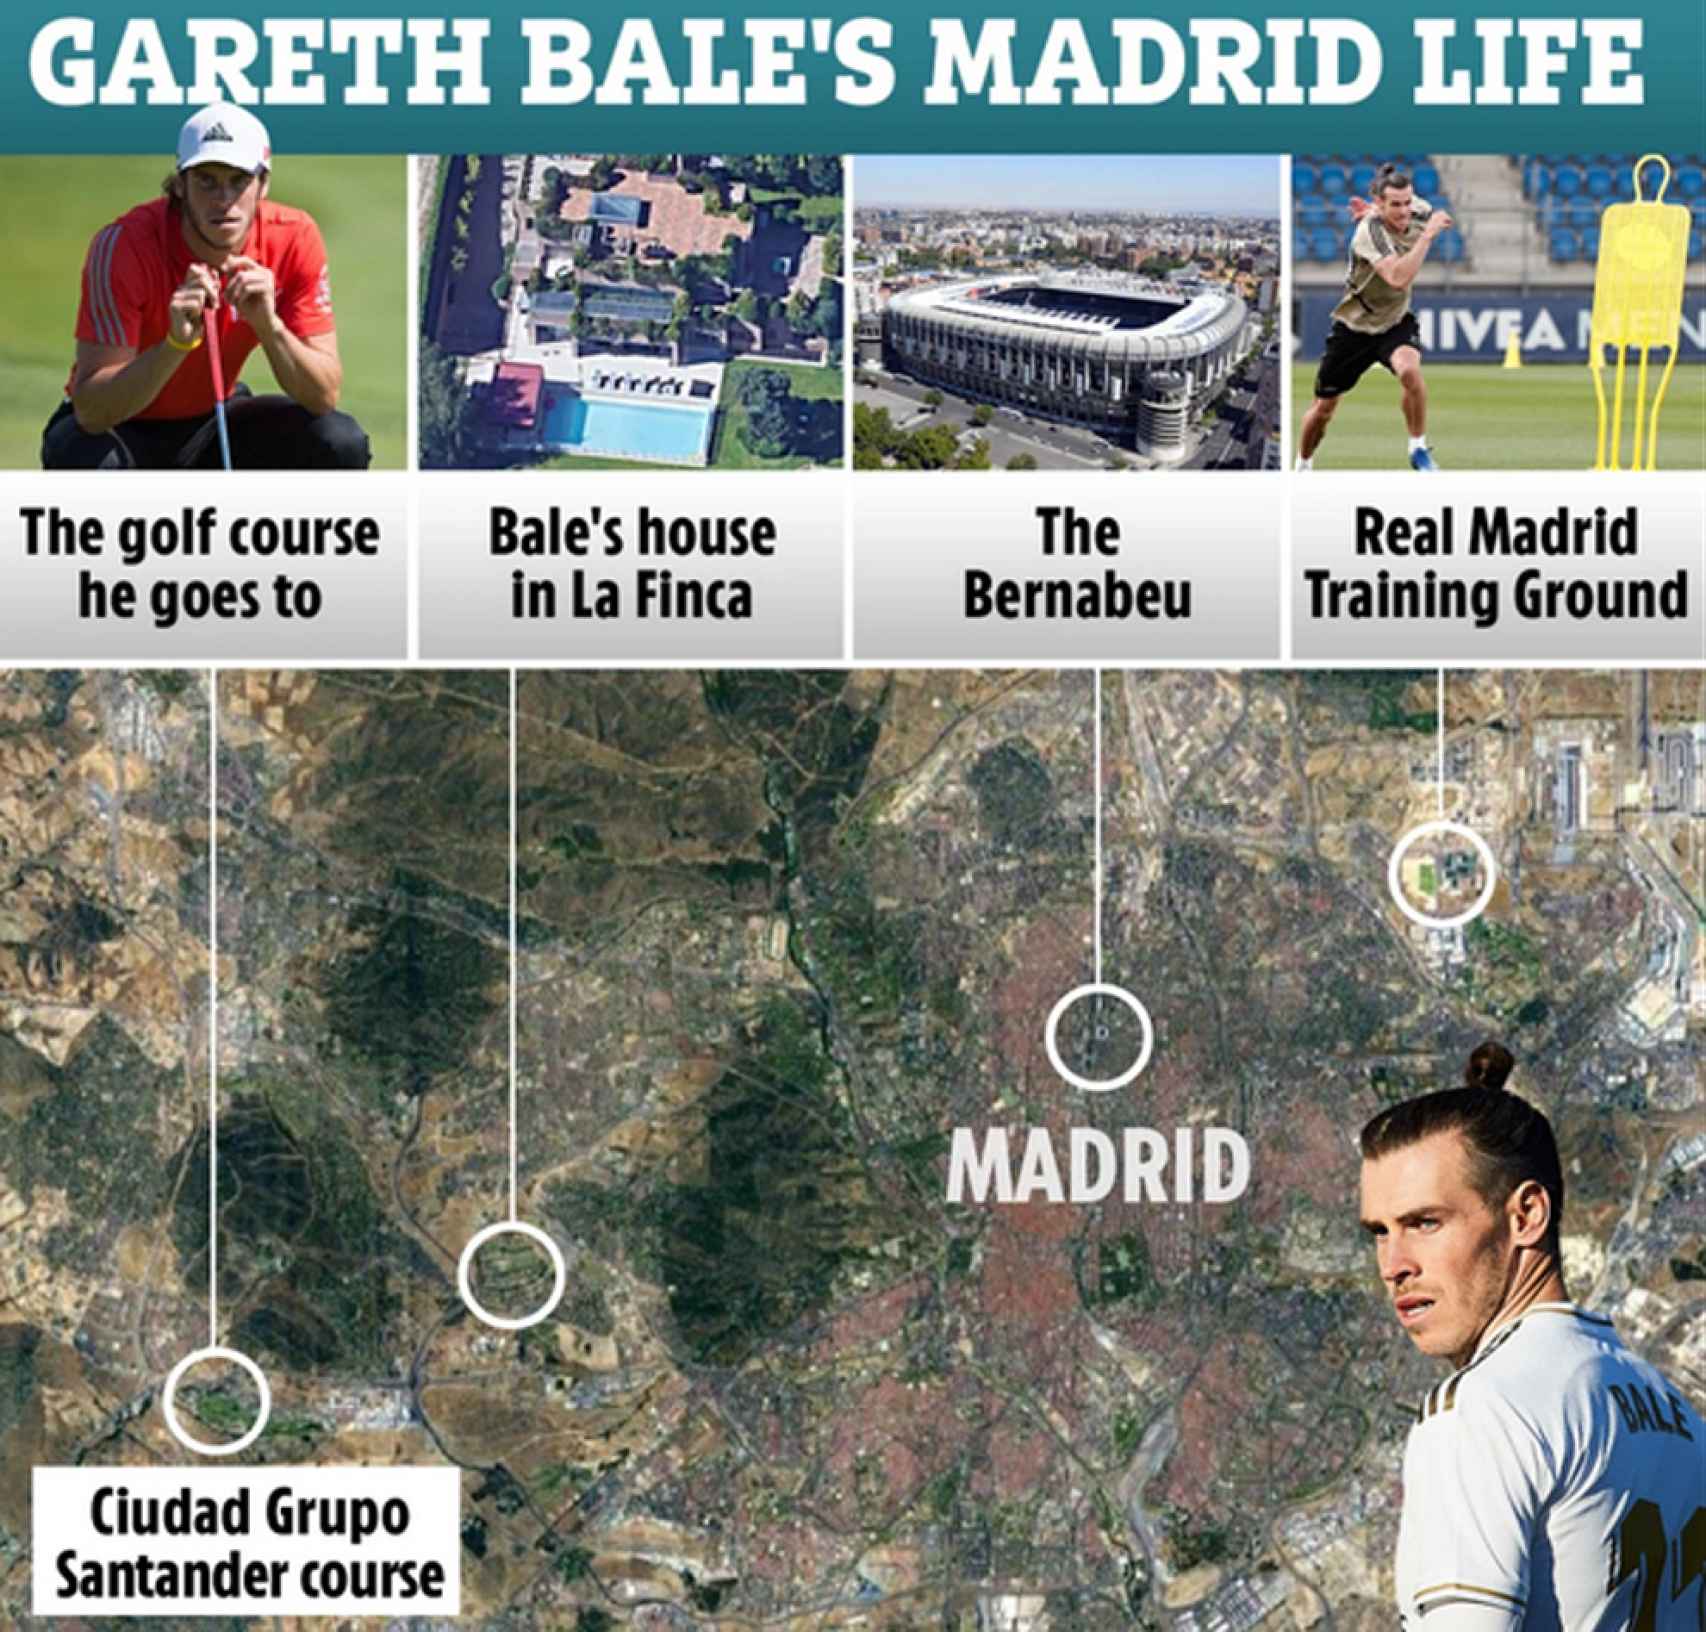 Reportaje de The Sun sobre la vida de Gareth Bale en Madrid